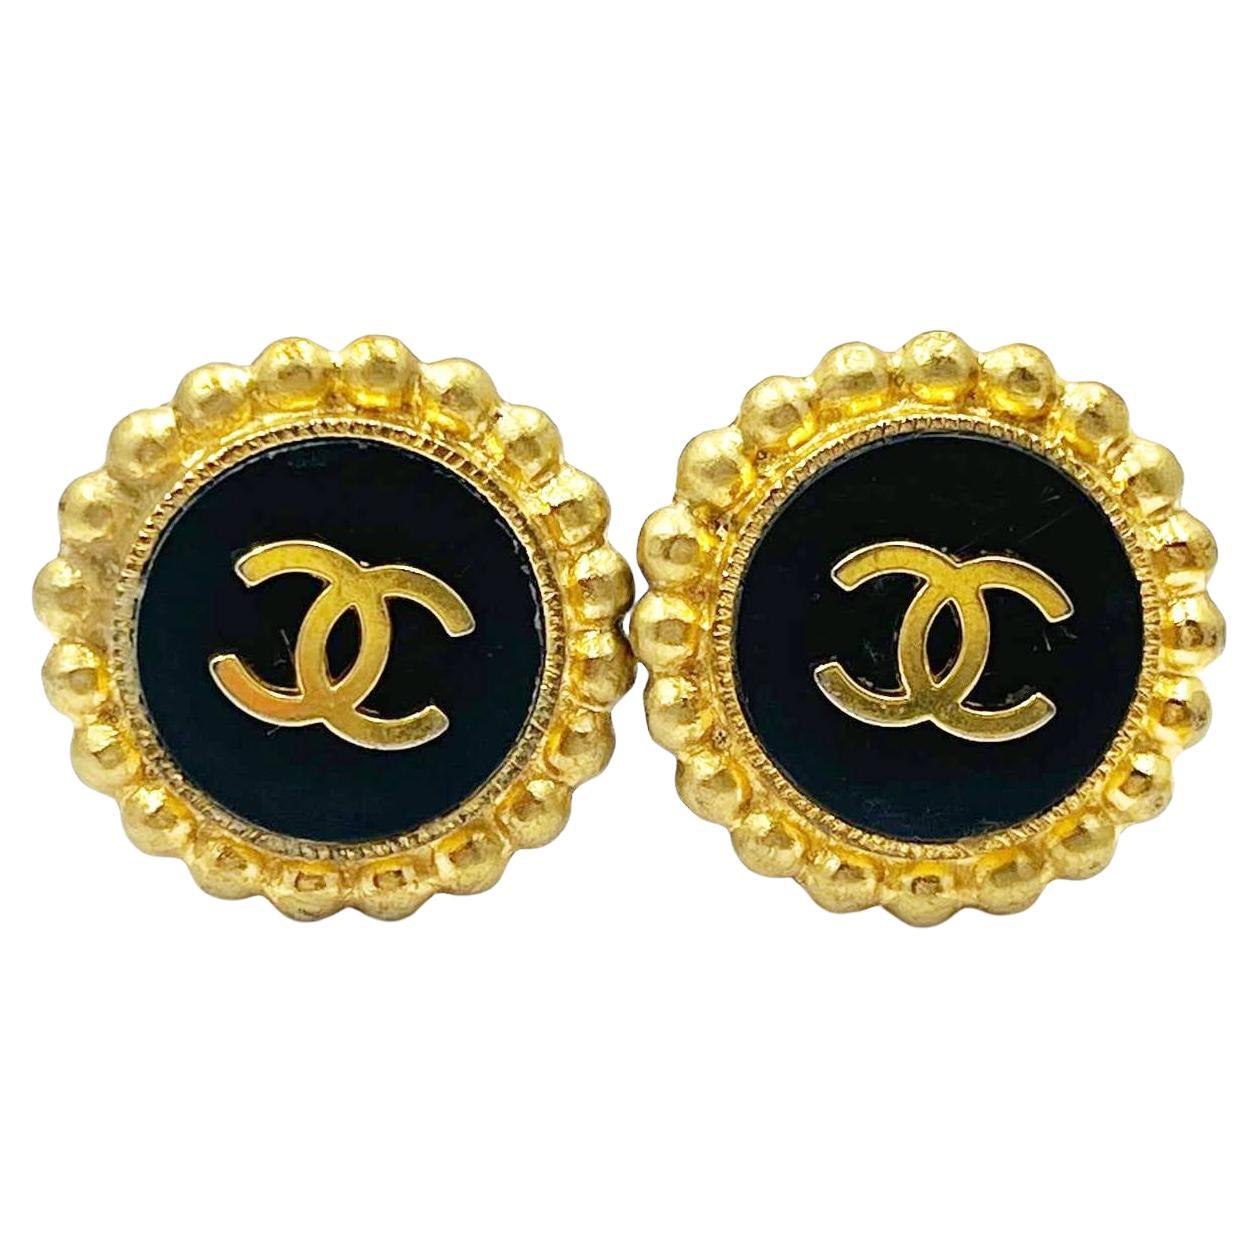 Chanel Vintage vergoldete CC schwarz-goldene gepunktete Kante Clip-Ohrringe 